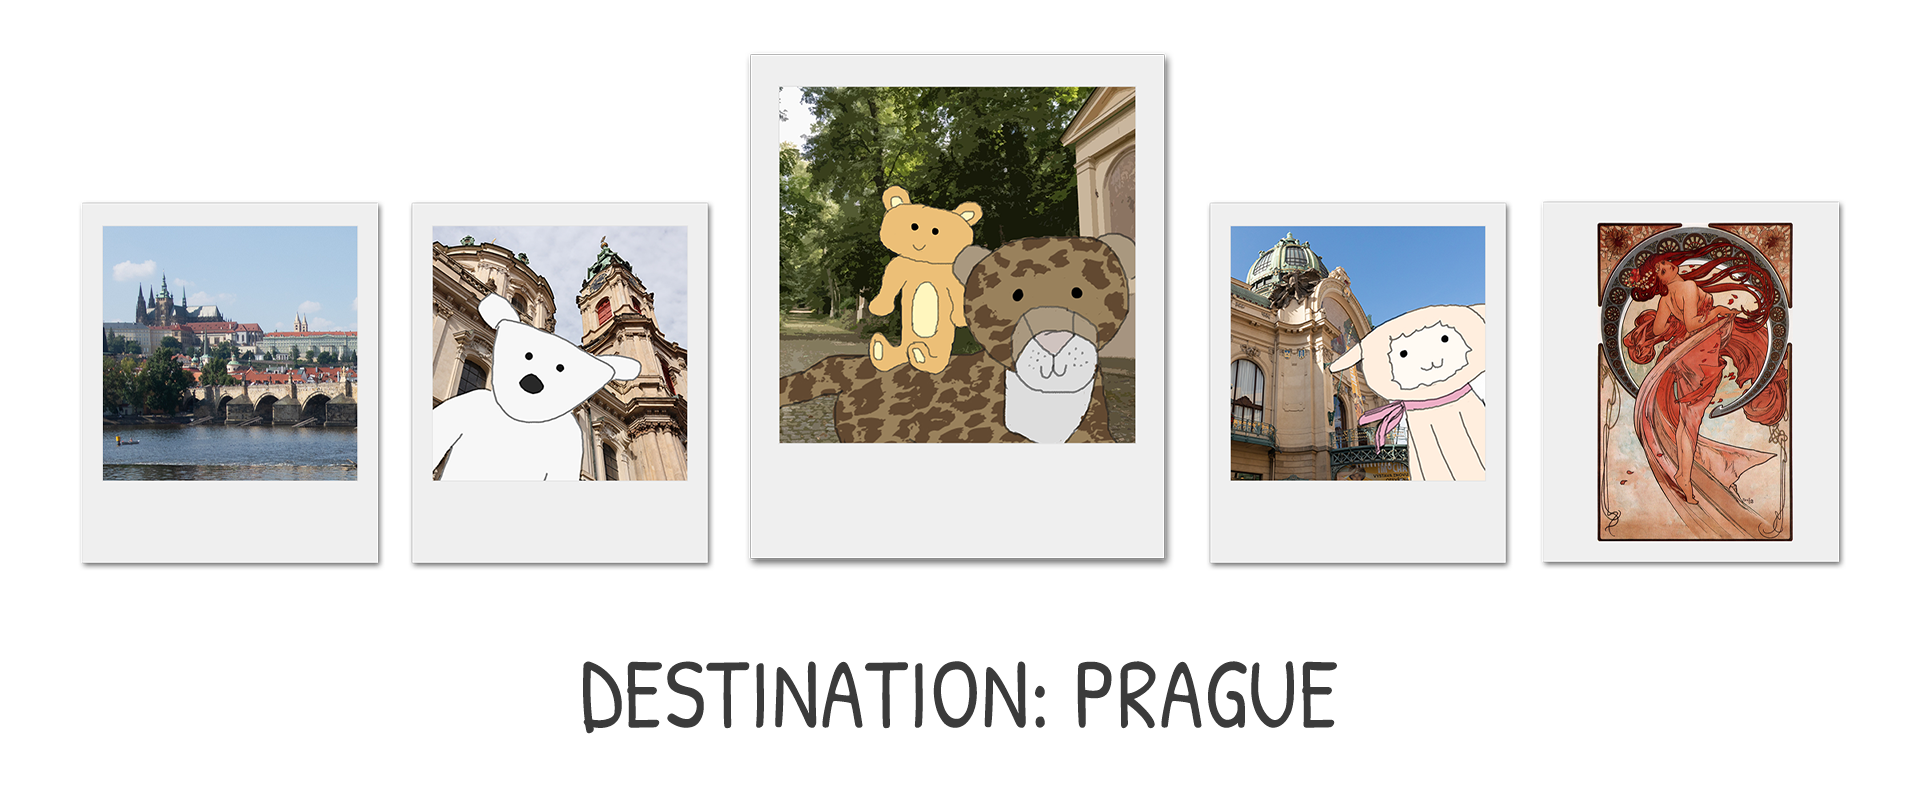 Destination: Prague